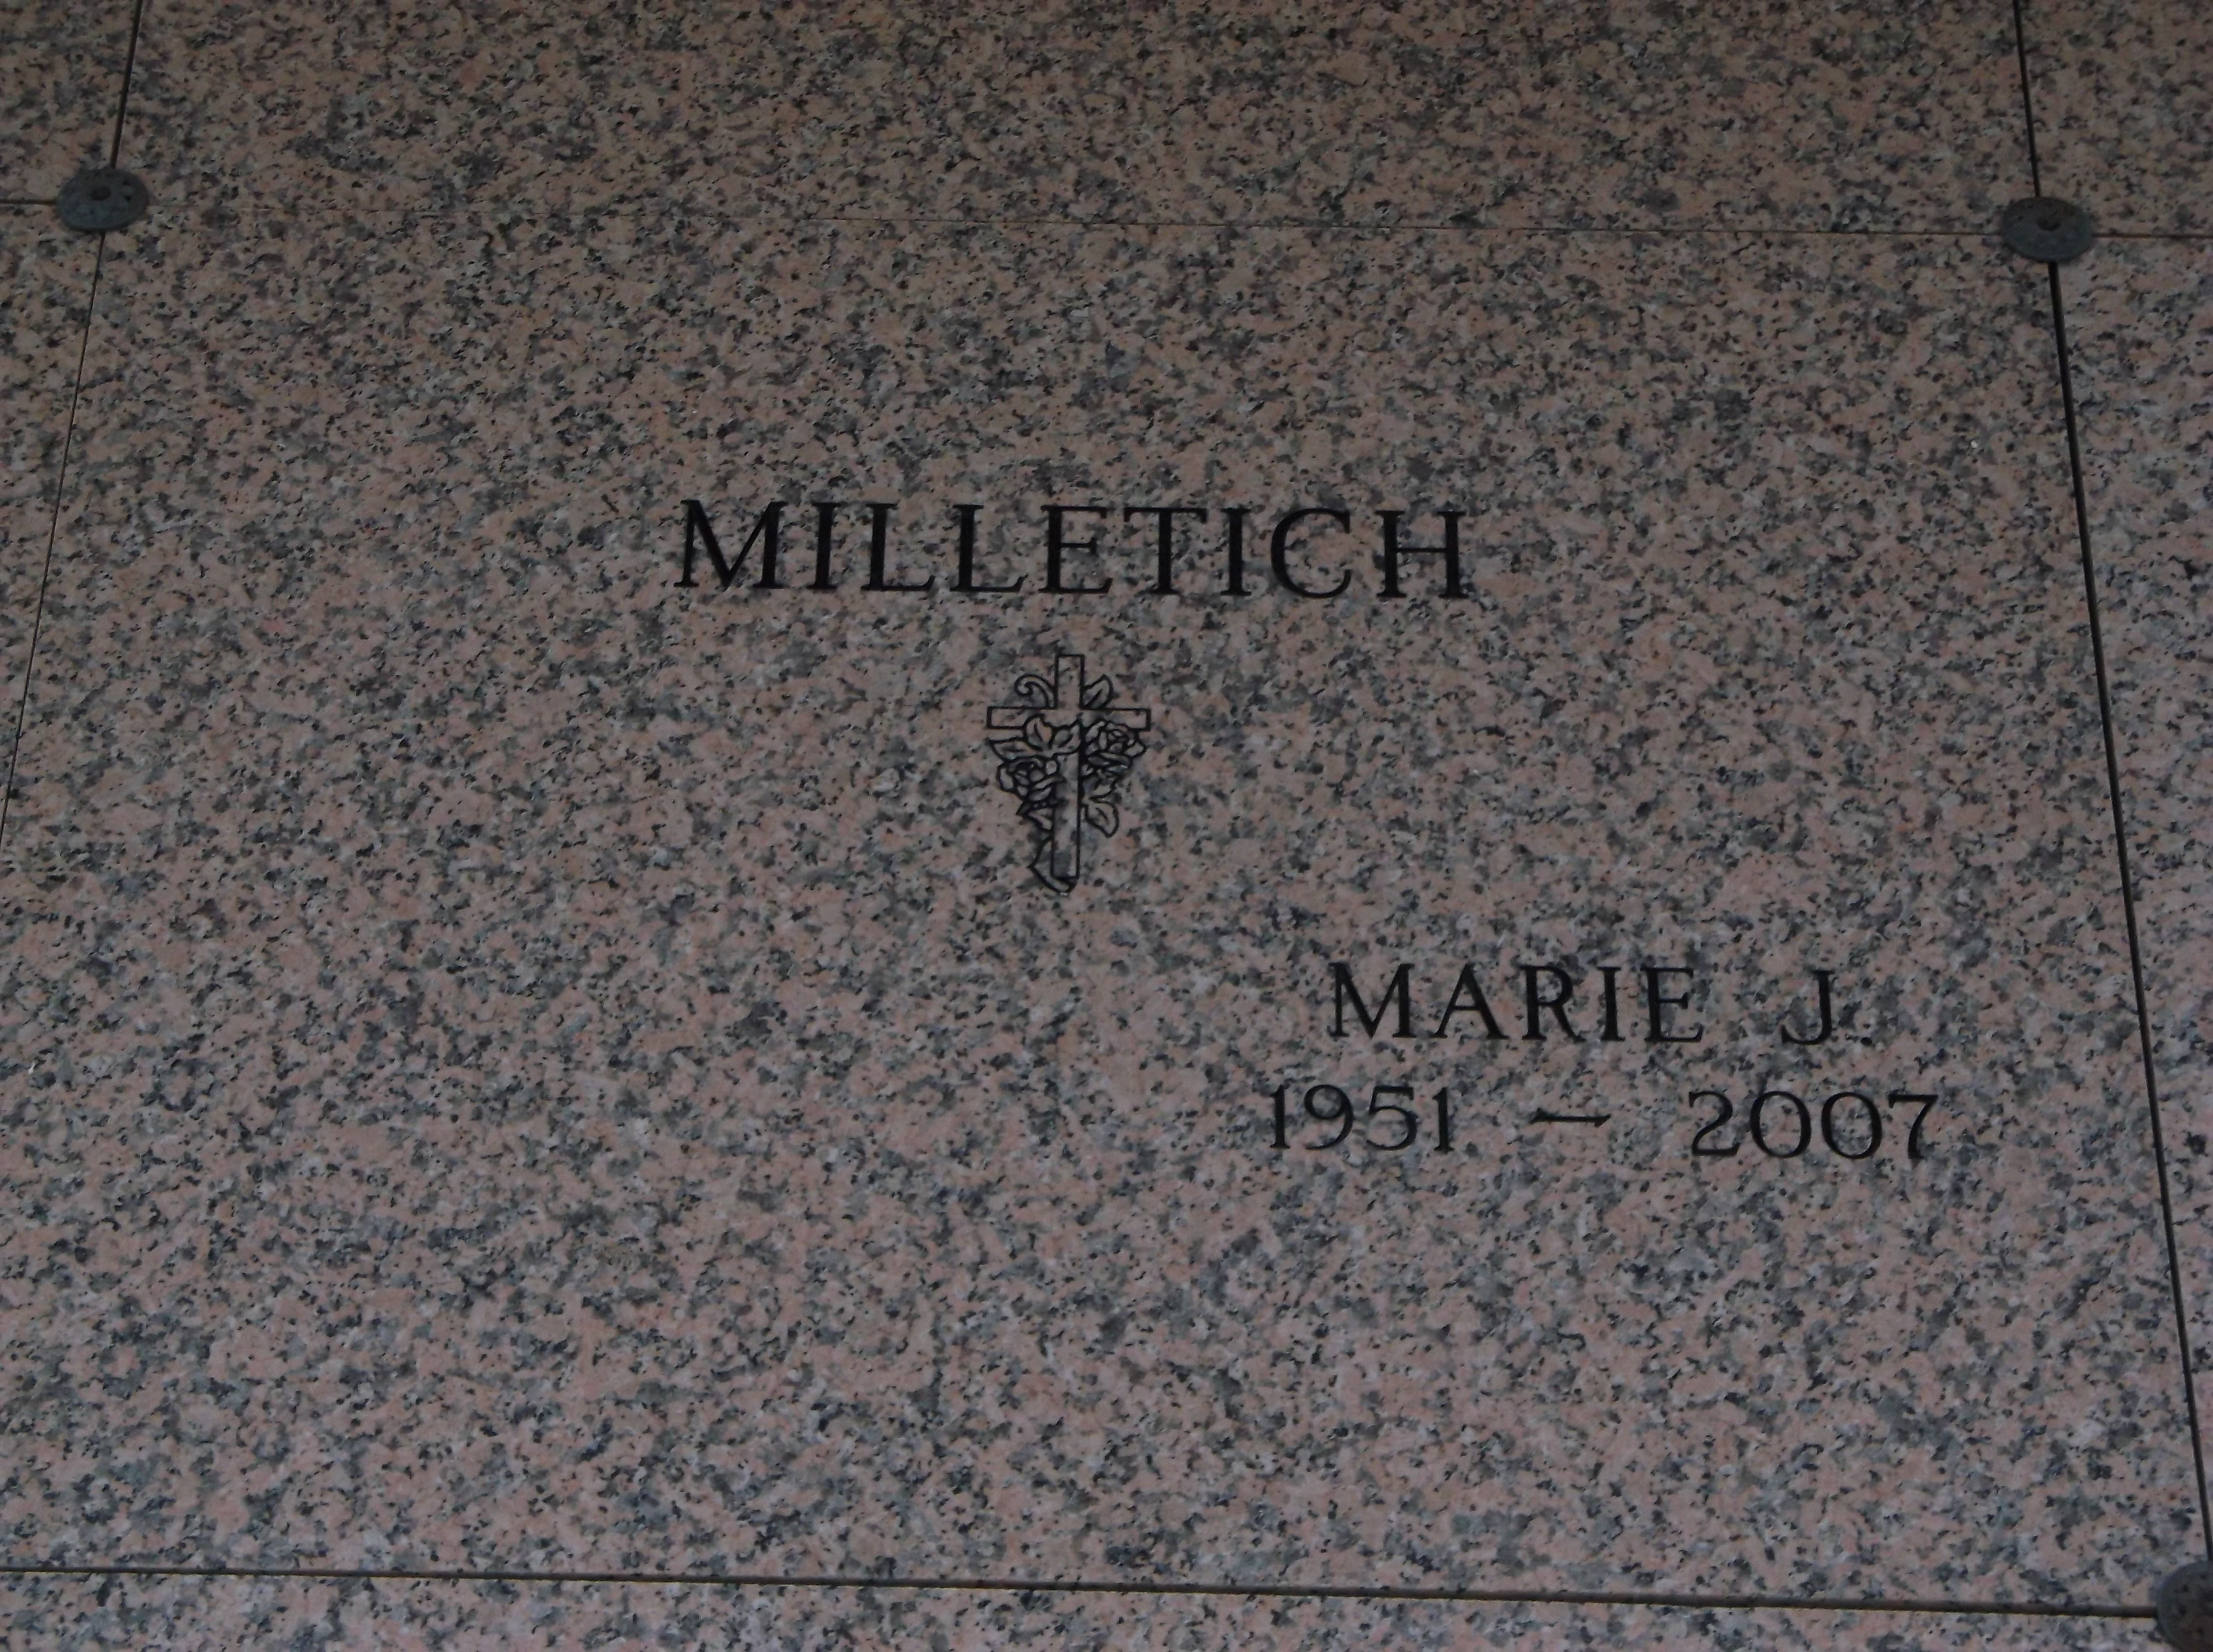 Marie J Milletich